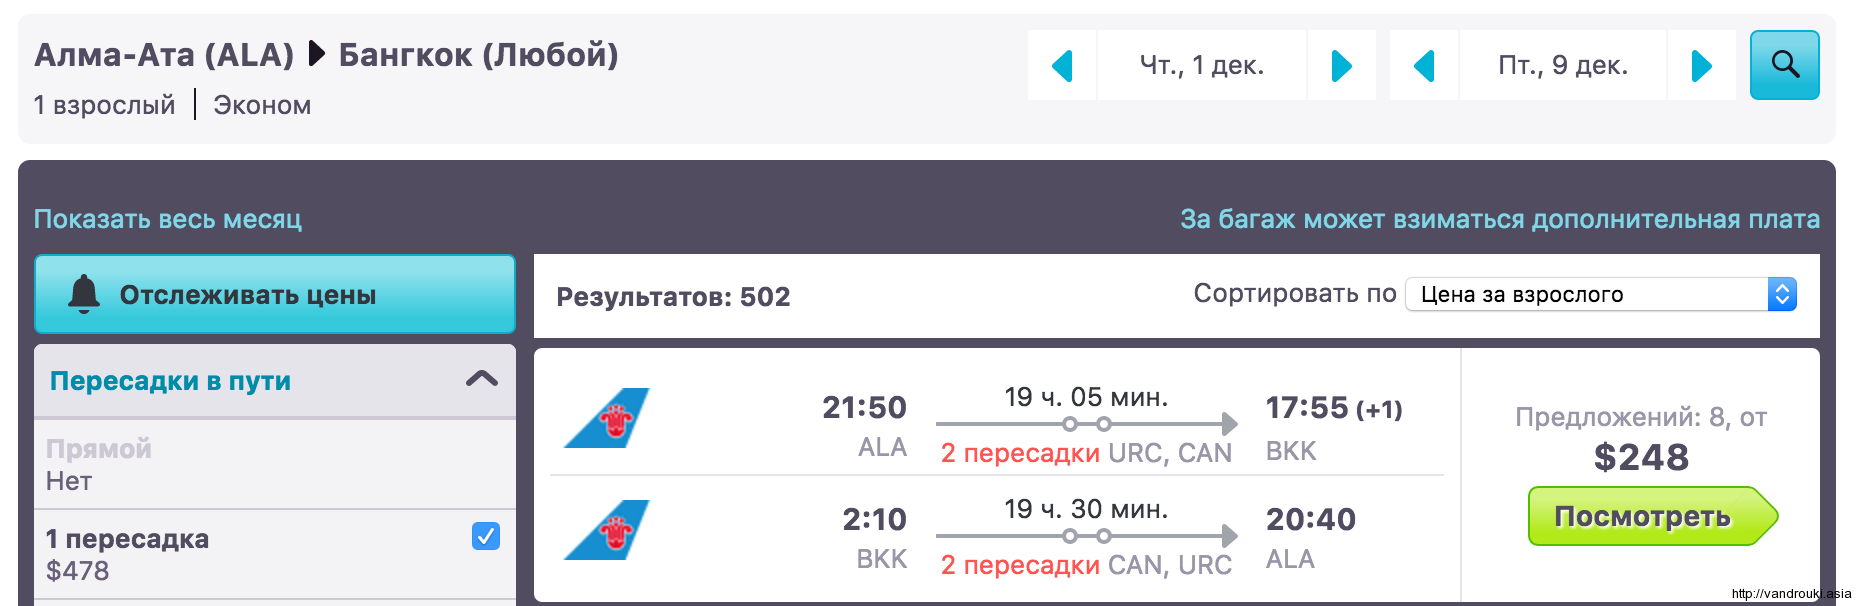 Минск набережные челны авиабилеты прямой рейс билет уфа германия цена на самолет